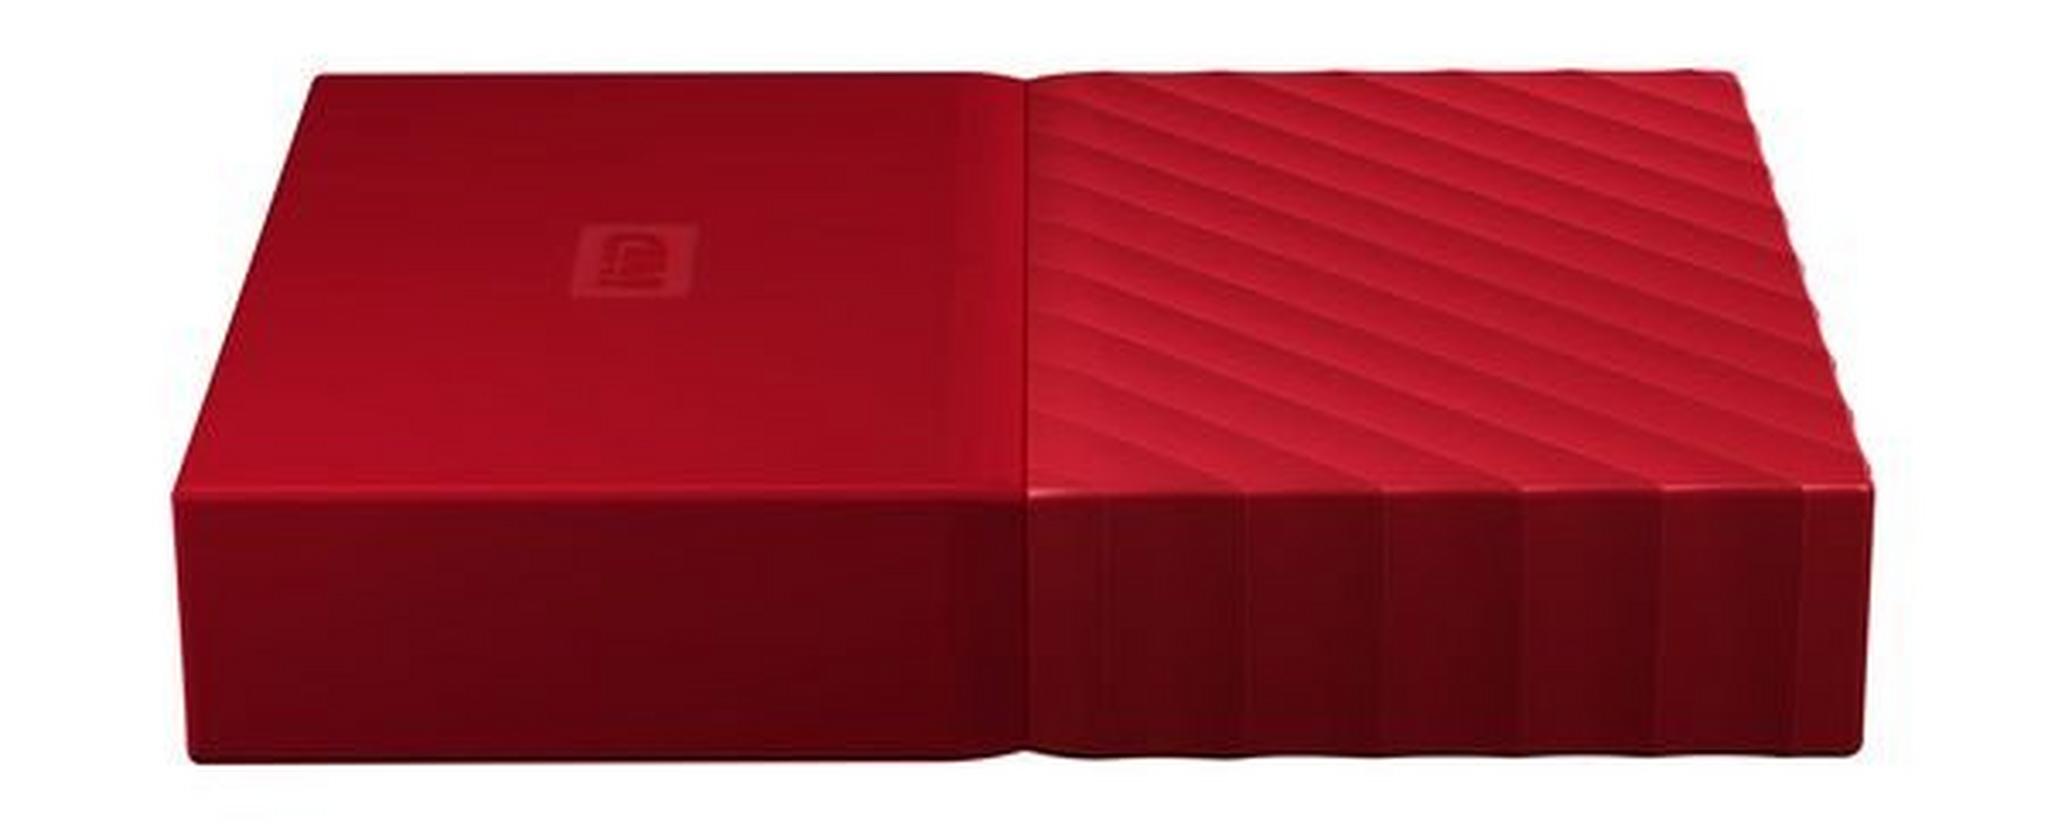 WD 2TB My Passport USB 3.0 External Hard Drive - Red